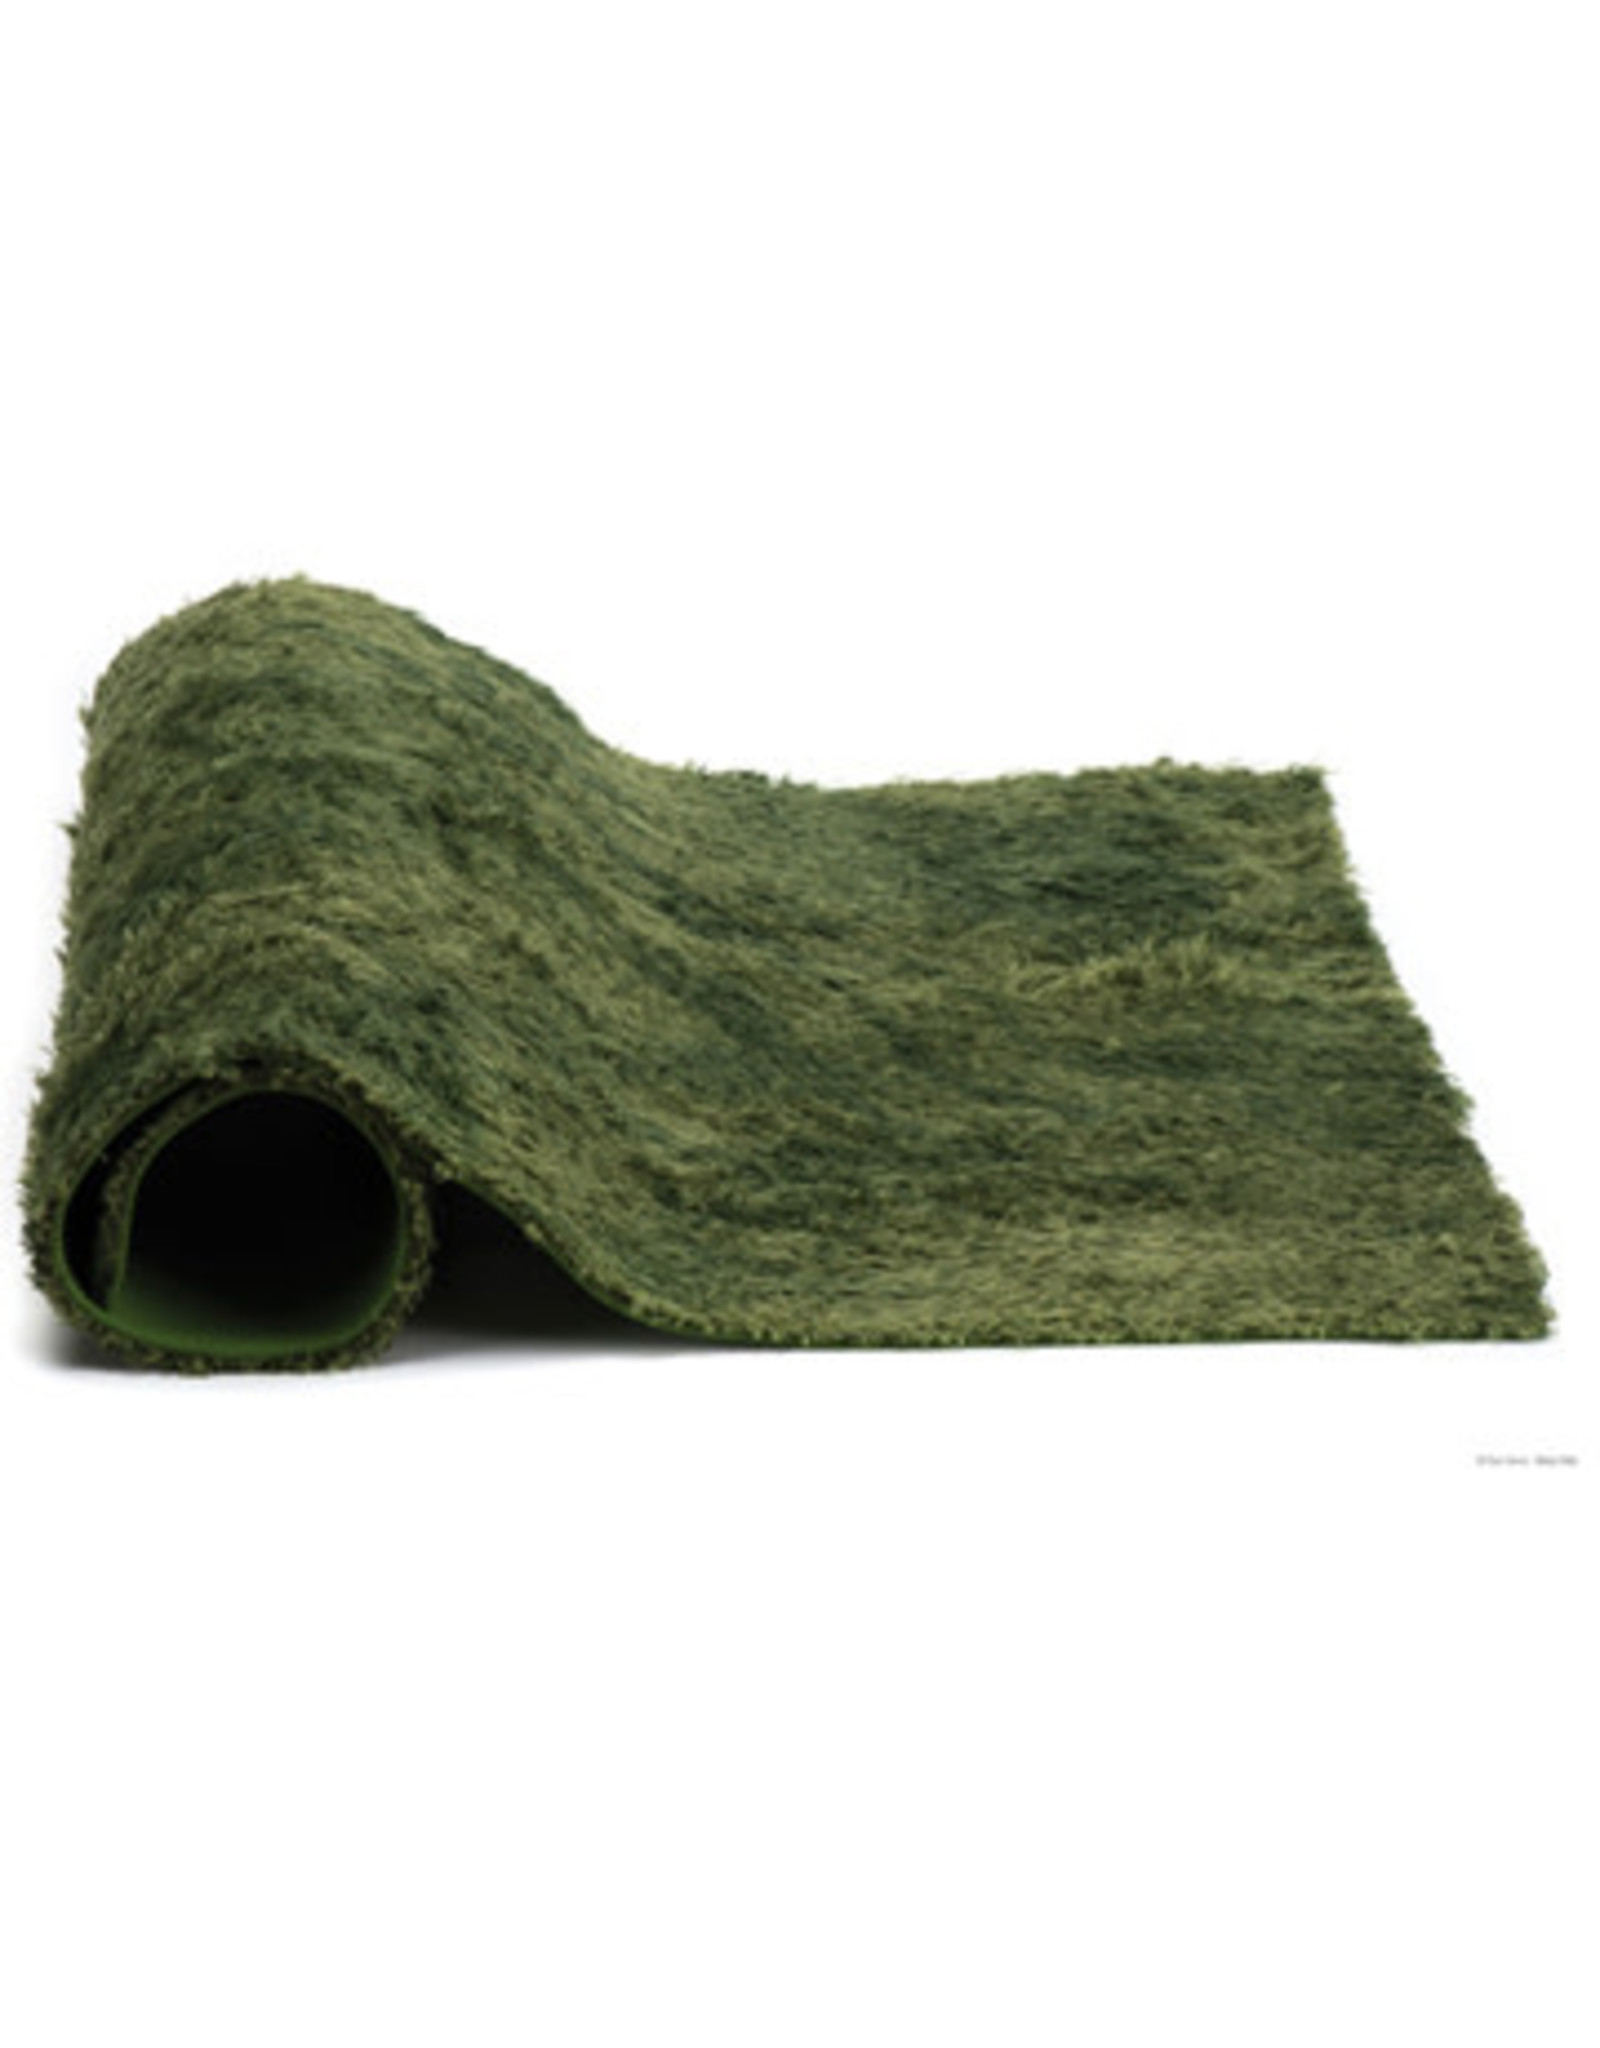 Exo Terra Moss Mat 30 x 30 cm (12" x 12")